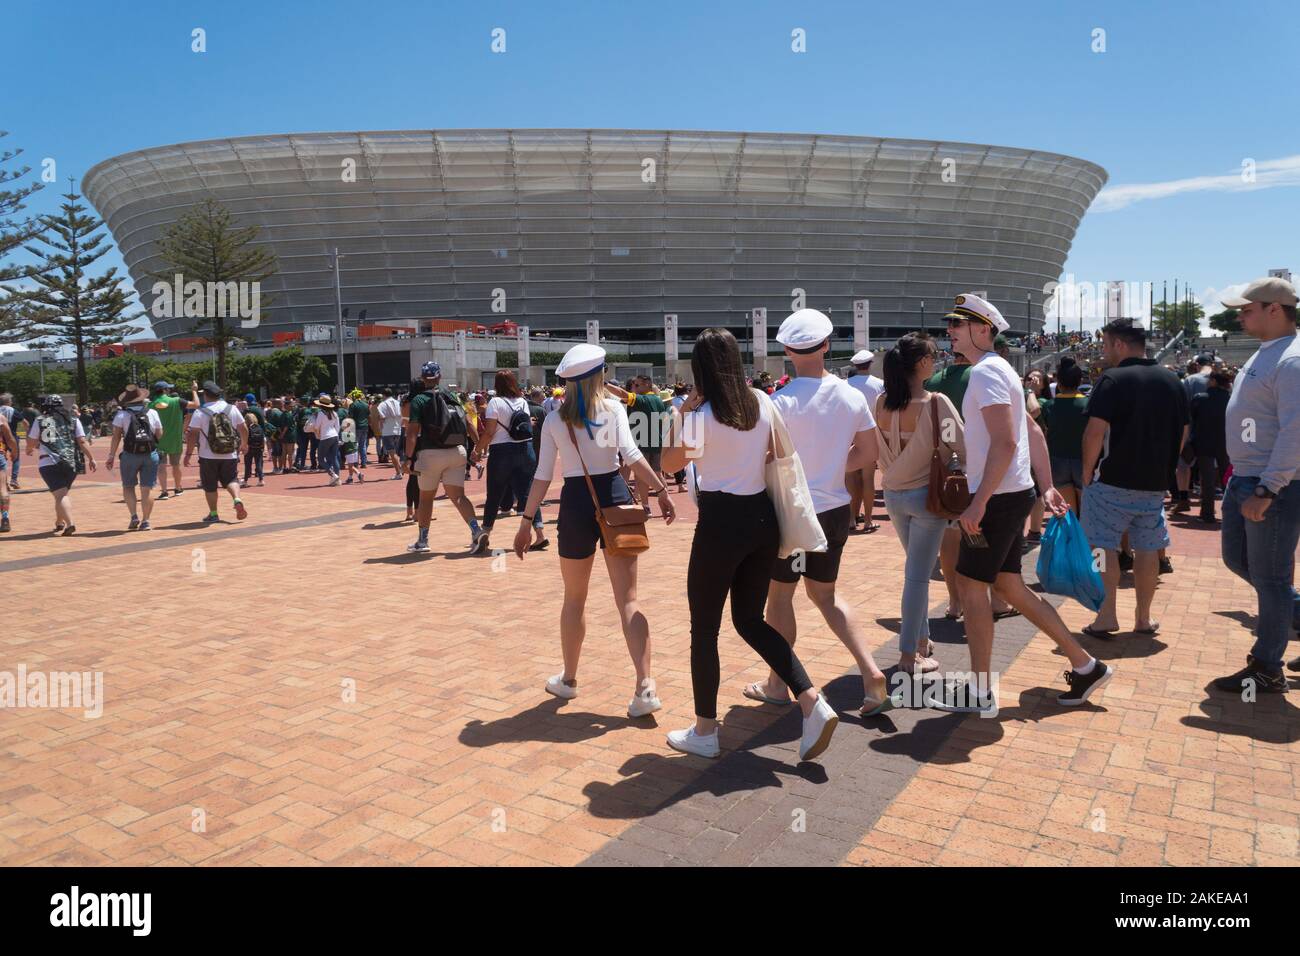 Cape Town stadium, Green Point, l'Afrique du Sud, où des foules de gens arrivent à soutenir leur équipe de rugby à 7 pendant le tournoi ou événement sportif Banque D'Images